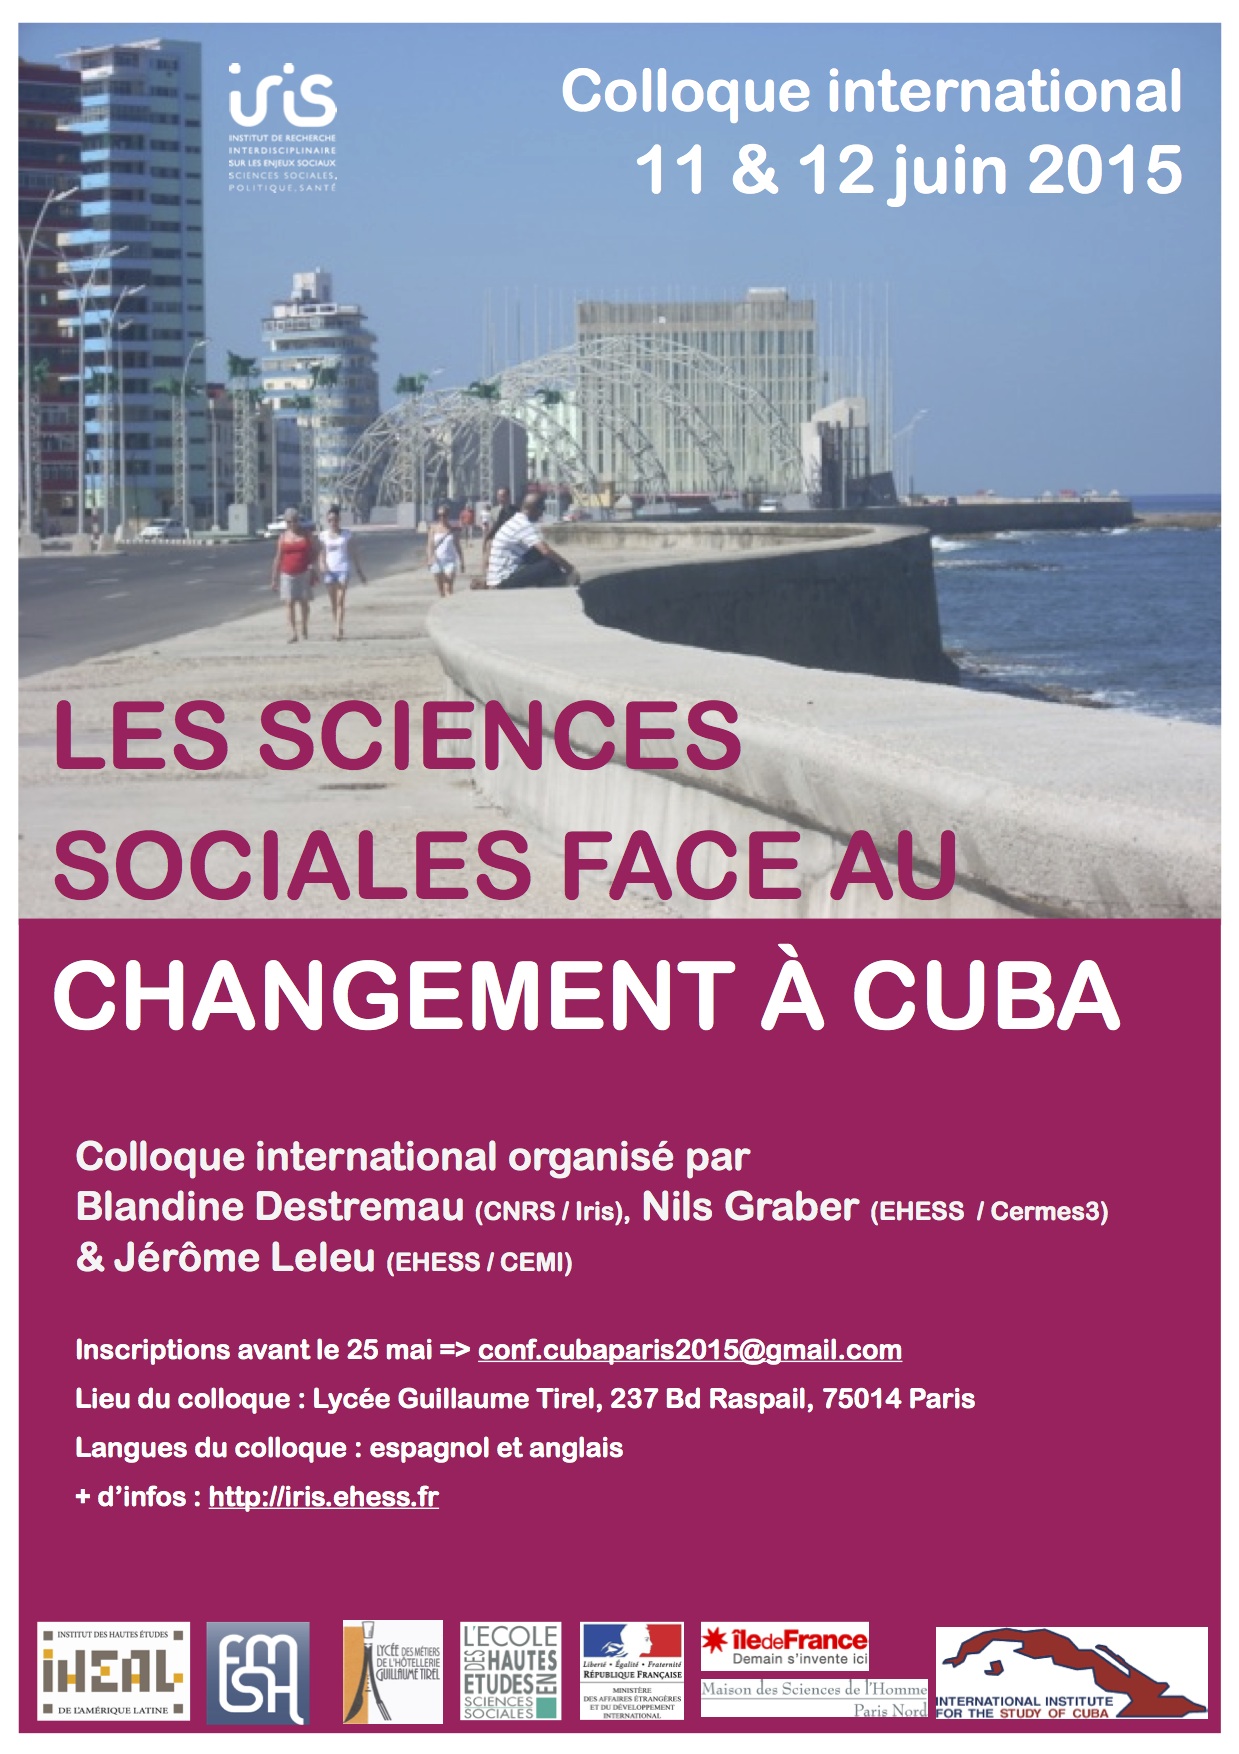 Colloque international > Les sciences sociales face au changement à Cuba, 11 & 12 juin 2015